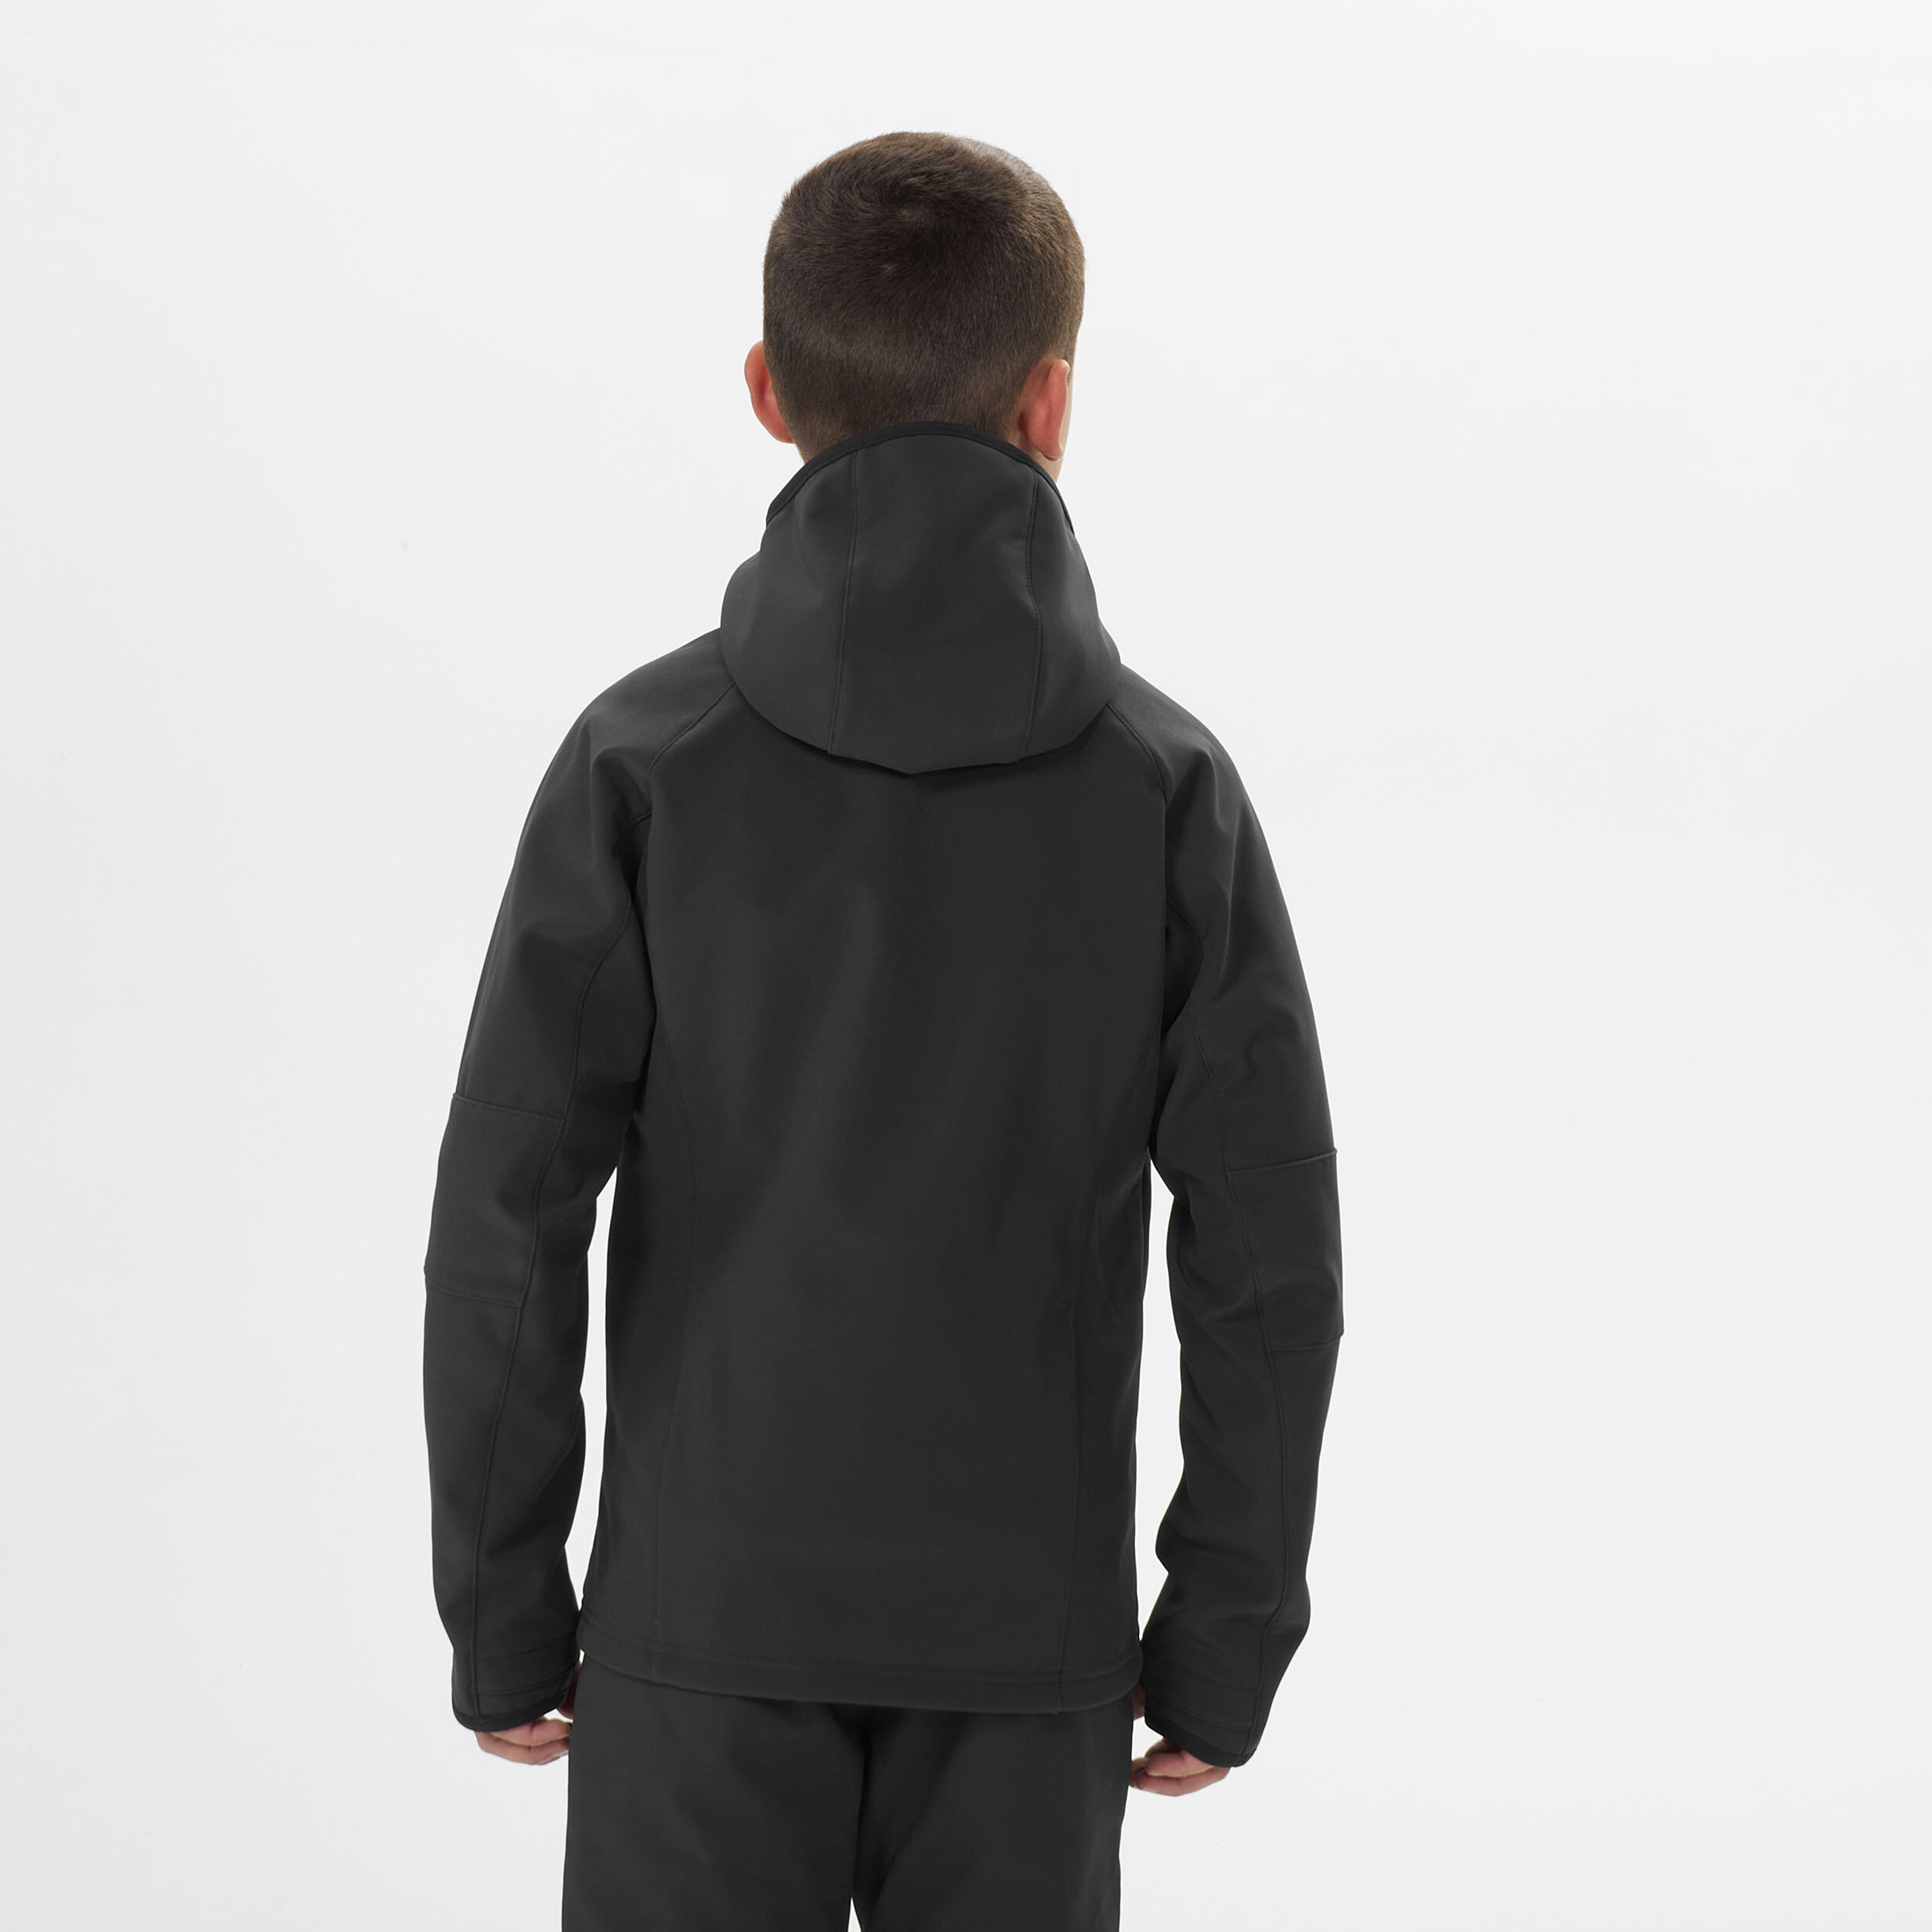 Manteau de randonnée enfant – MH 500 noir/rouge - QUECHUA